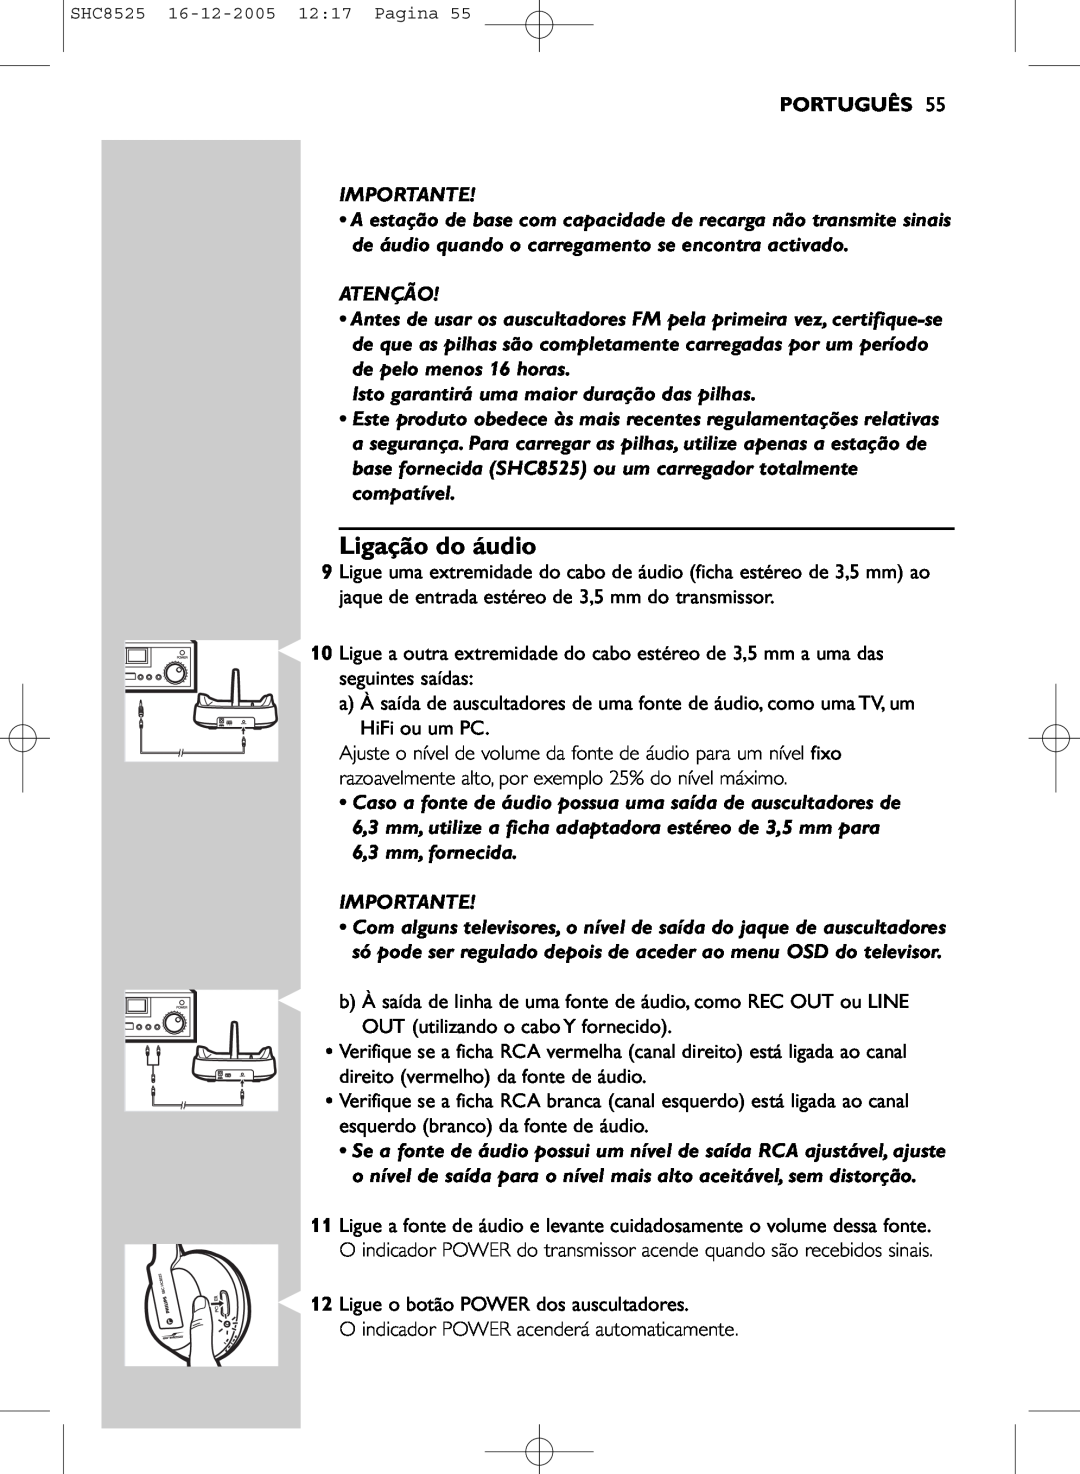 Event electronic SHC8525 manual Ligação do áudio, Português 